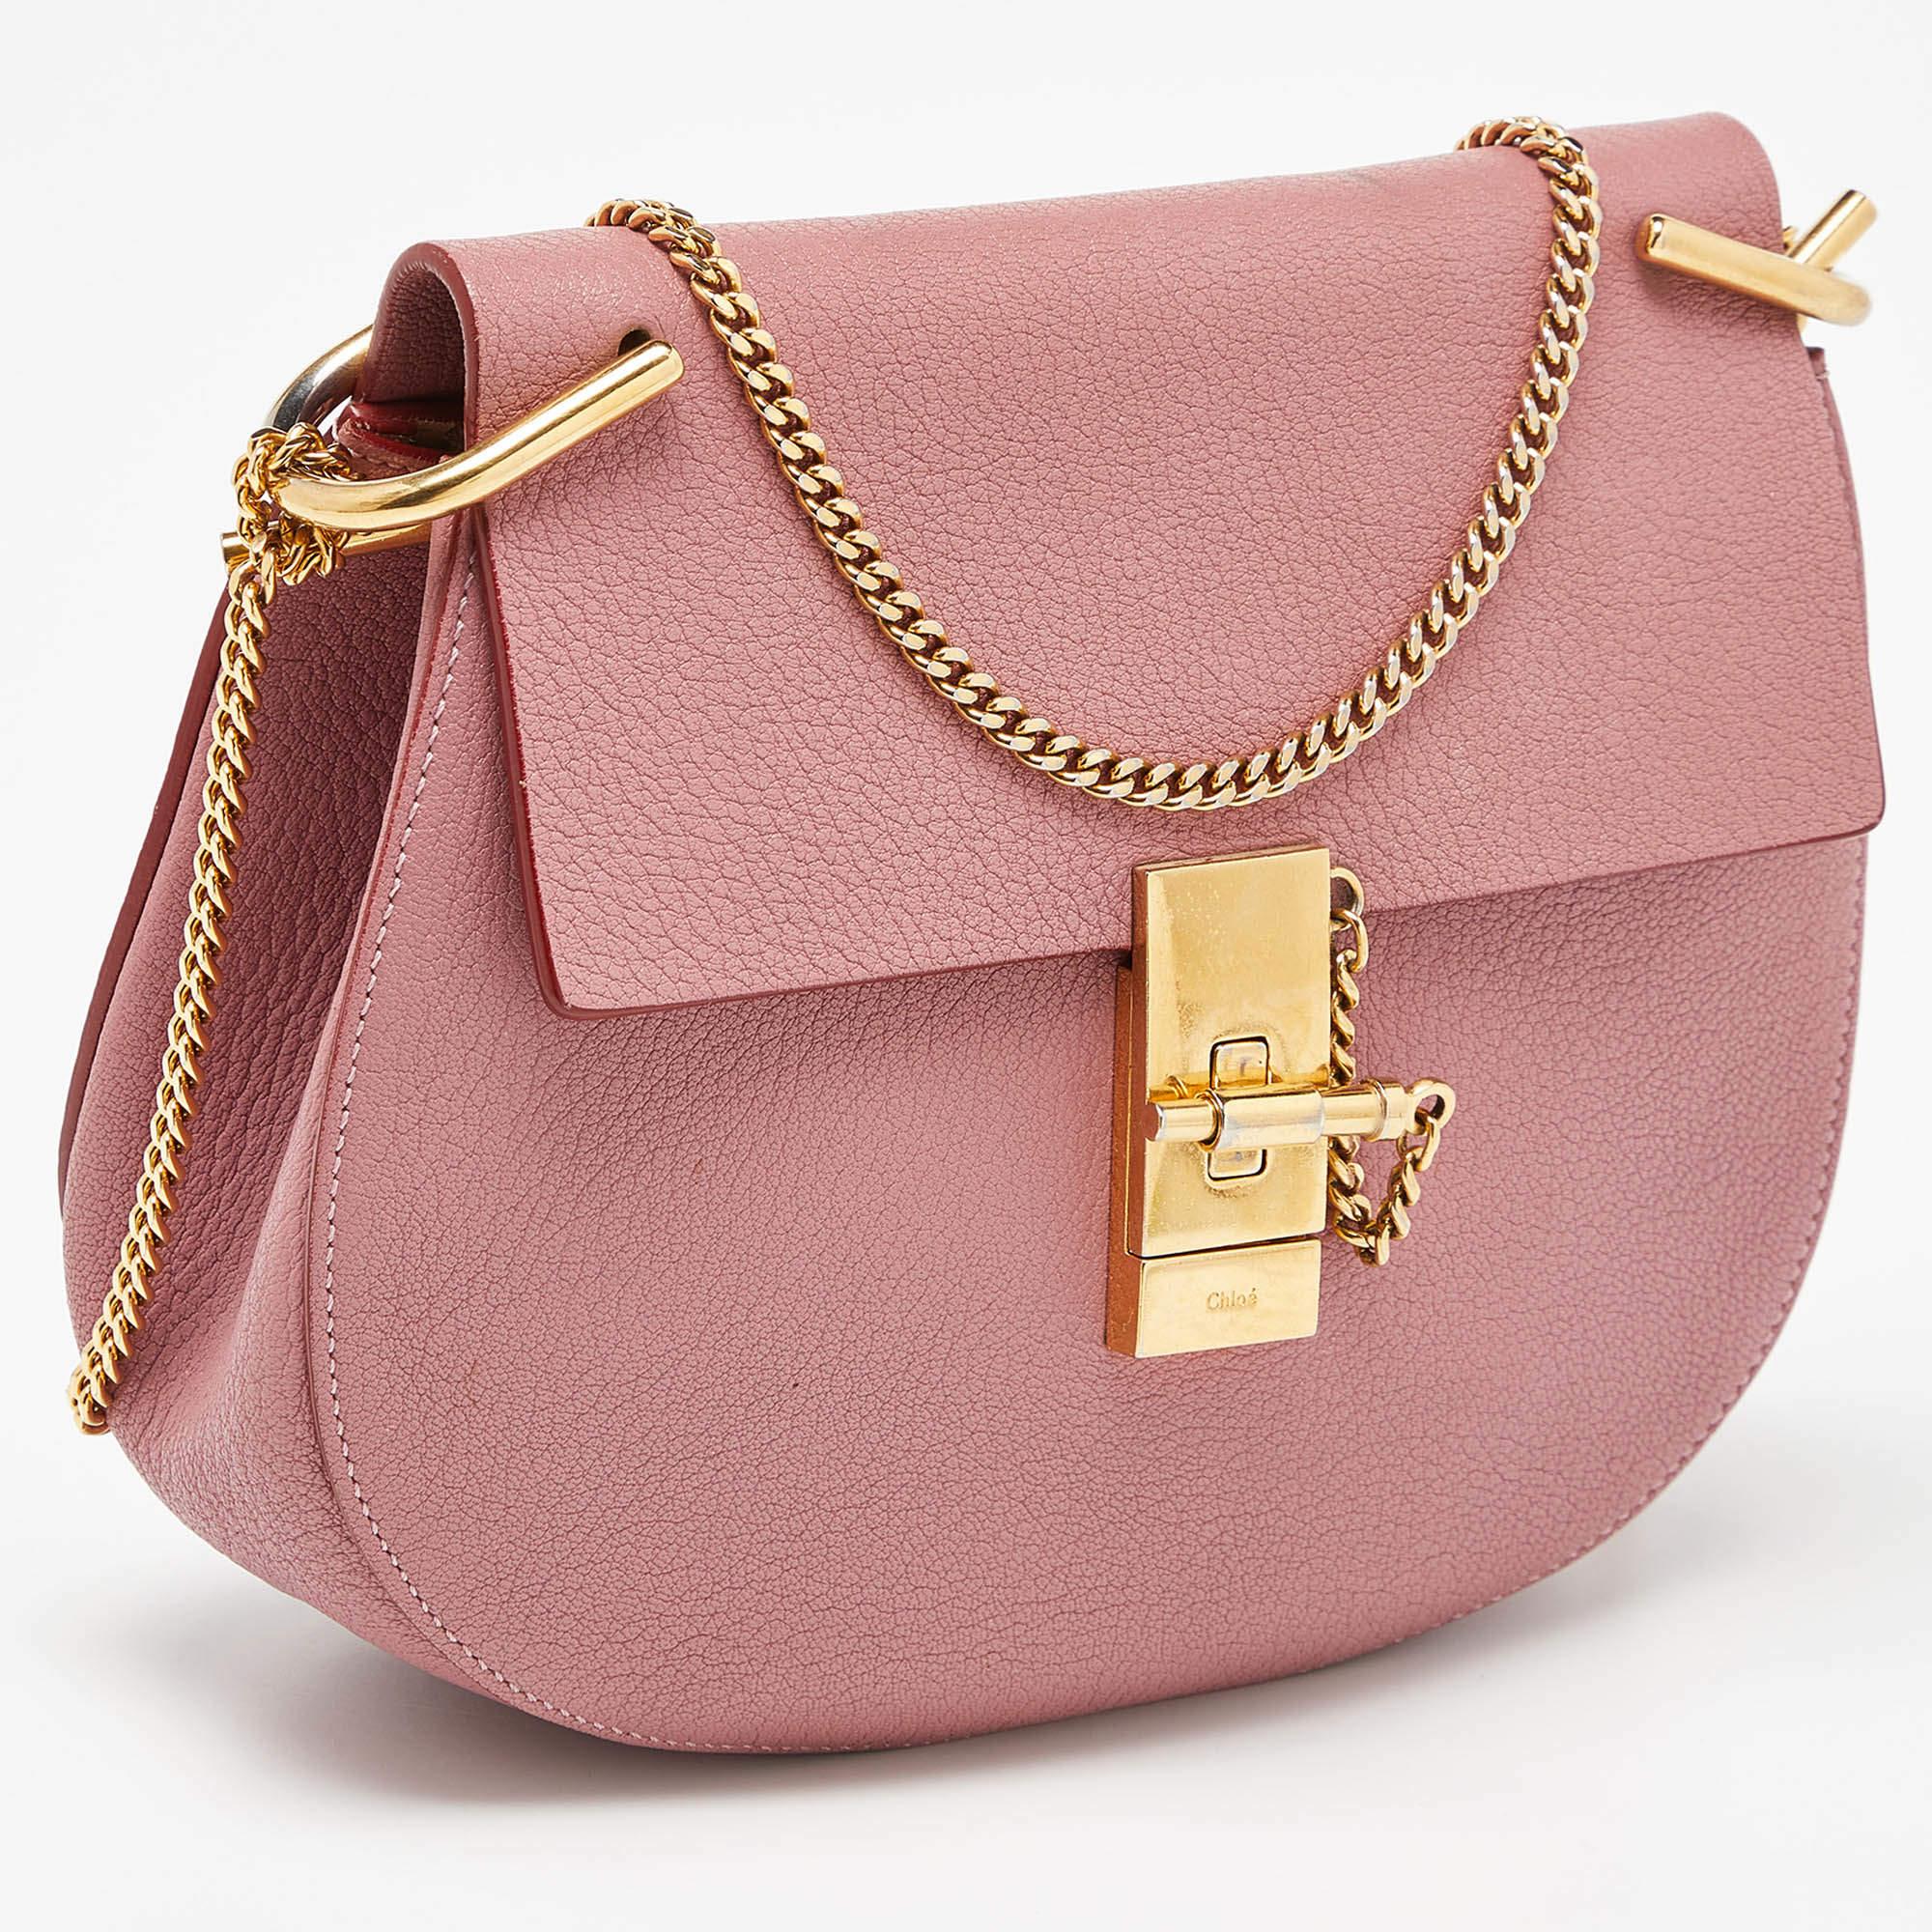 Die Drew-Tasche von Chloe, eine der bekanntesten Taschen der Luxuswelt, war Teil der Herbst/Winter-Kollektion 2014 des Labels. Er hat eine ausgeprägte Form und minimale stilistische Details. Diese Umhängetasche ist sorgfältig aus Leder gefertigt und